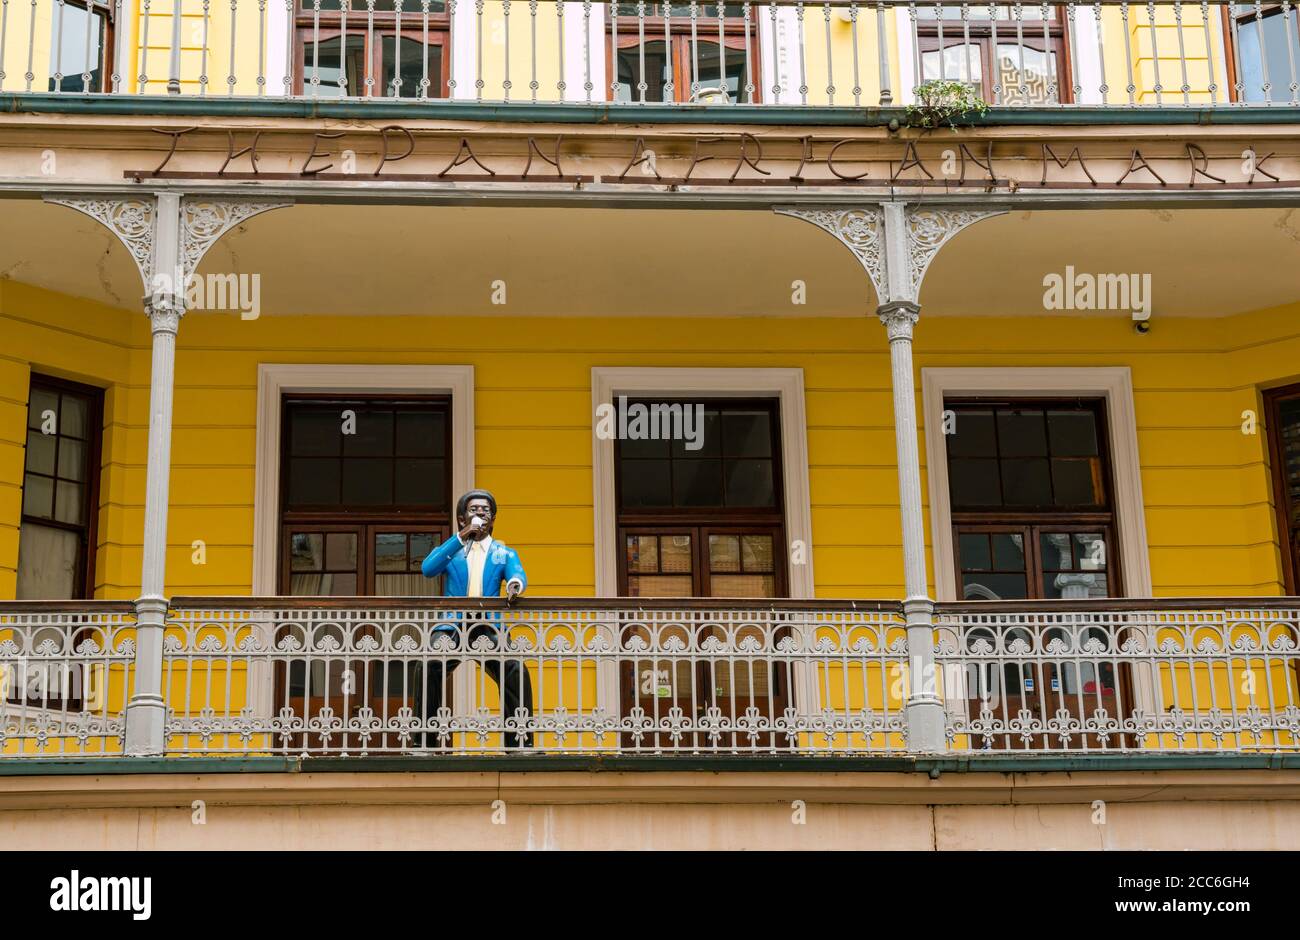 Ancien bâtiment de style colonial avec figure mâle noire parlant dans le microphone sur le balcon, marché panafricain, long Street, le Cap, Afrique du Sud Banque D'Images